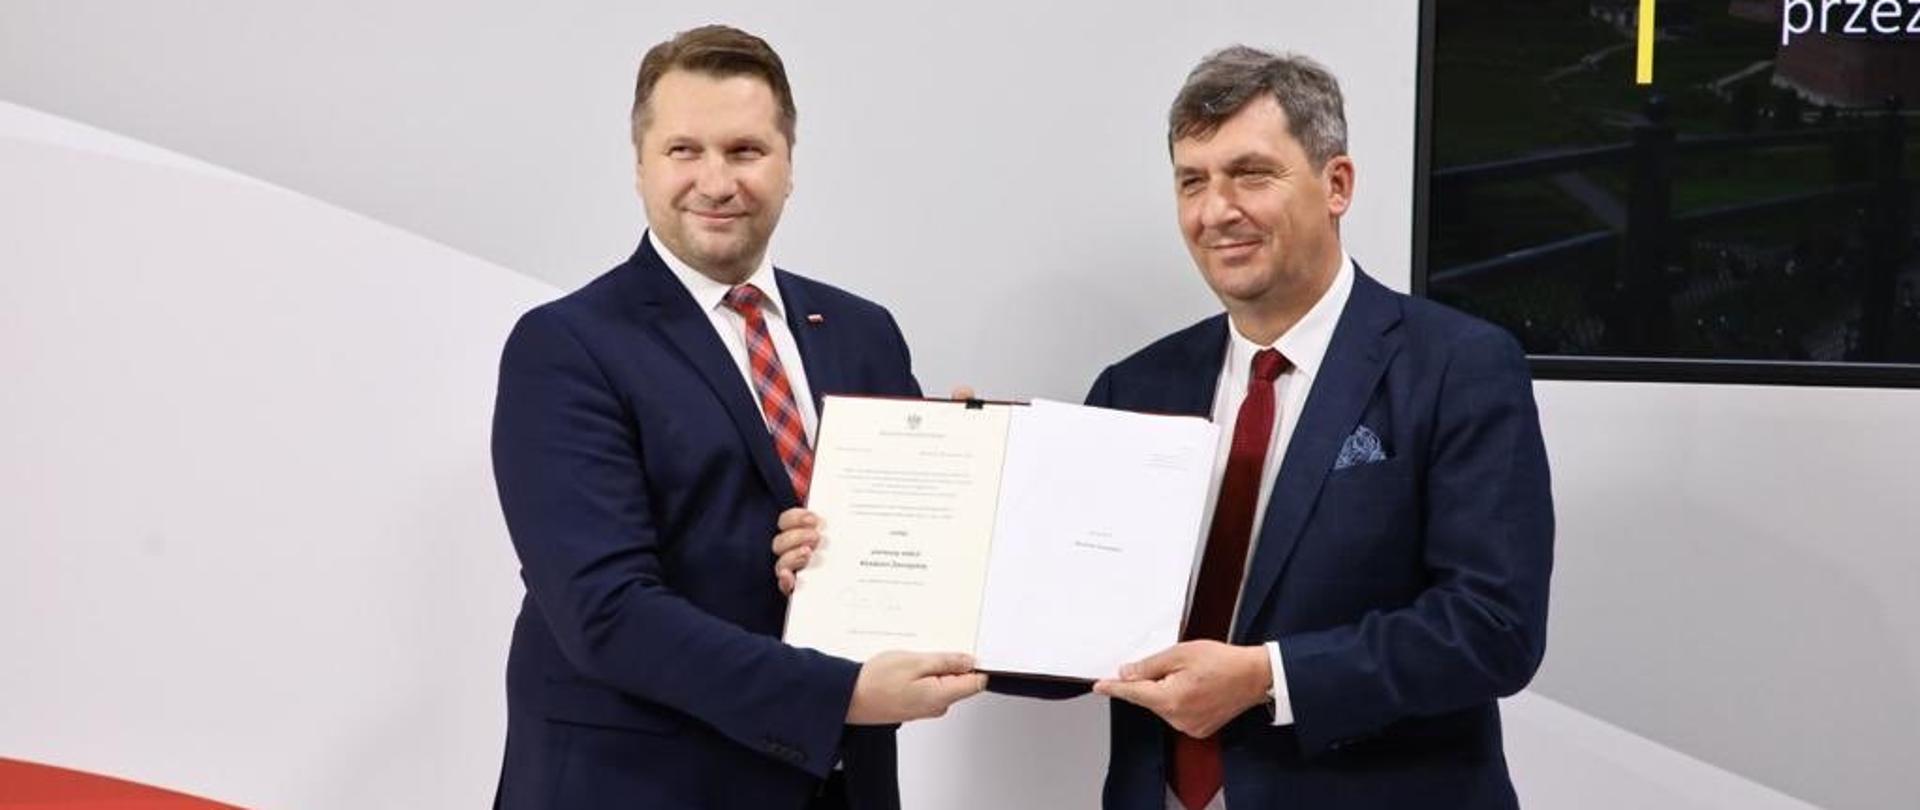 Uroczyste wręczenie nadania statutu Akademii Zamojskiej przez Ministra Edukacji i Nauki Przemysława Czarnka